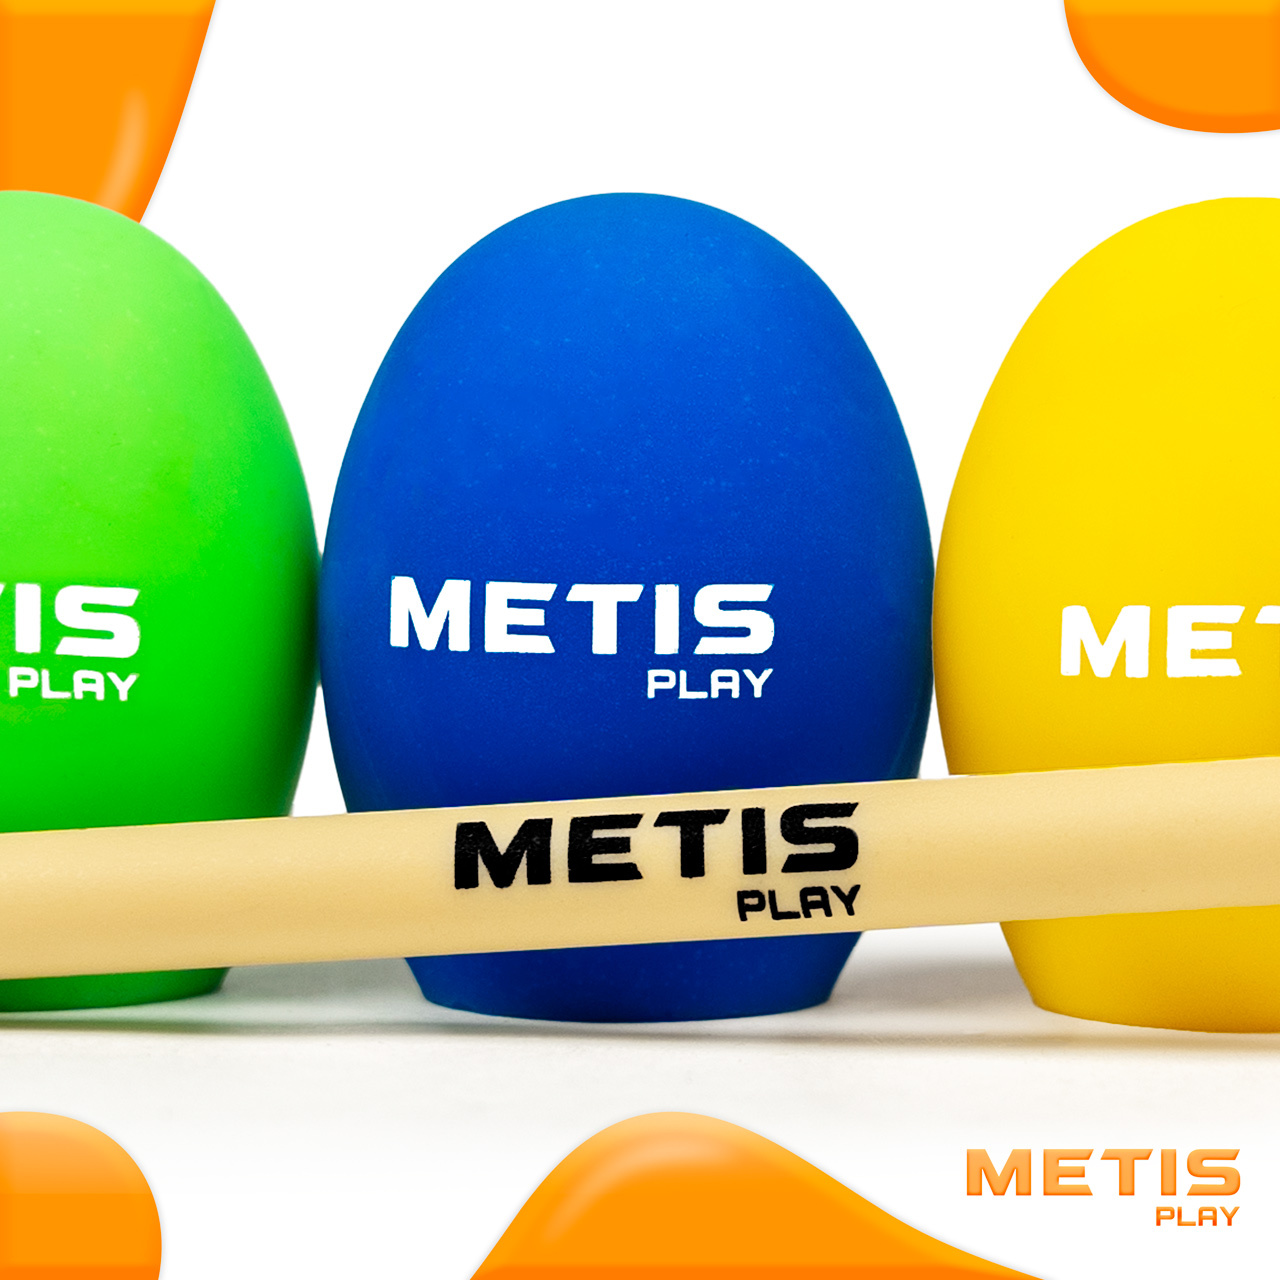 METIS Play Egg & Spoon Set [Pack Of 4]